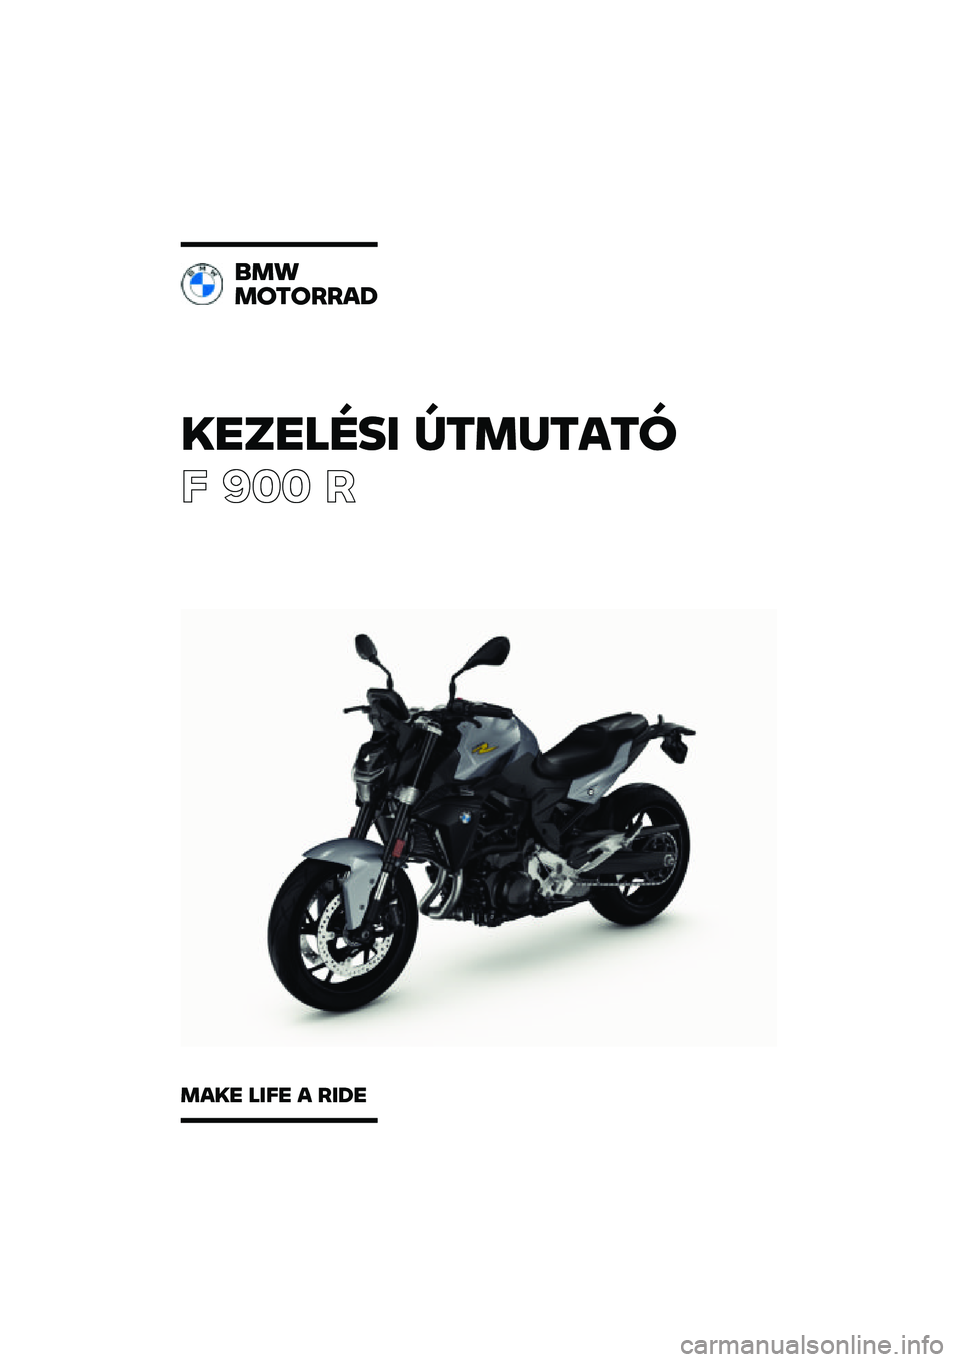 BMW MOTORRAD F 900 R 2021  Kezelési útmutató (in Hungarian) �������\b�	 �
�\f�
��\f��\f�
� ��� �
��
�
�
��\f�����
�
��� ��	�� � ��	�� 